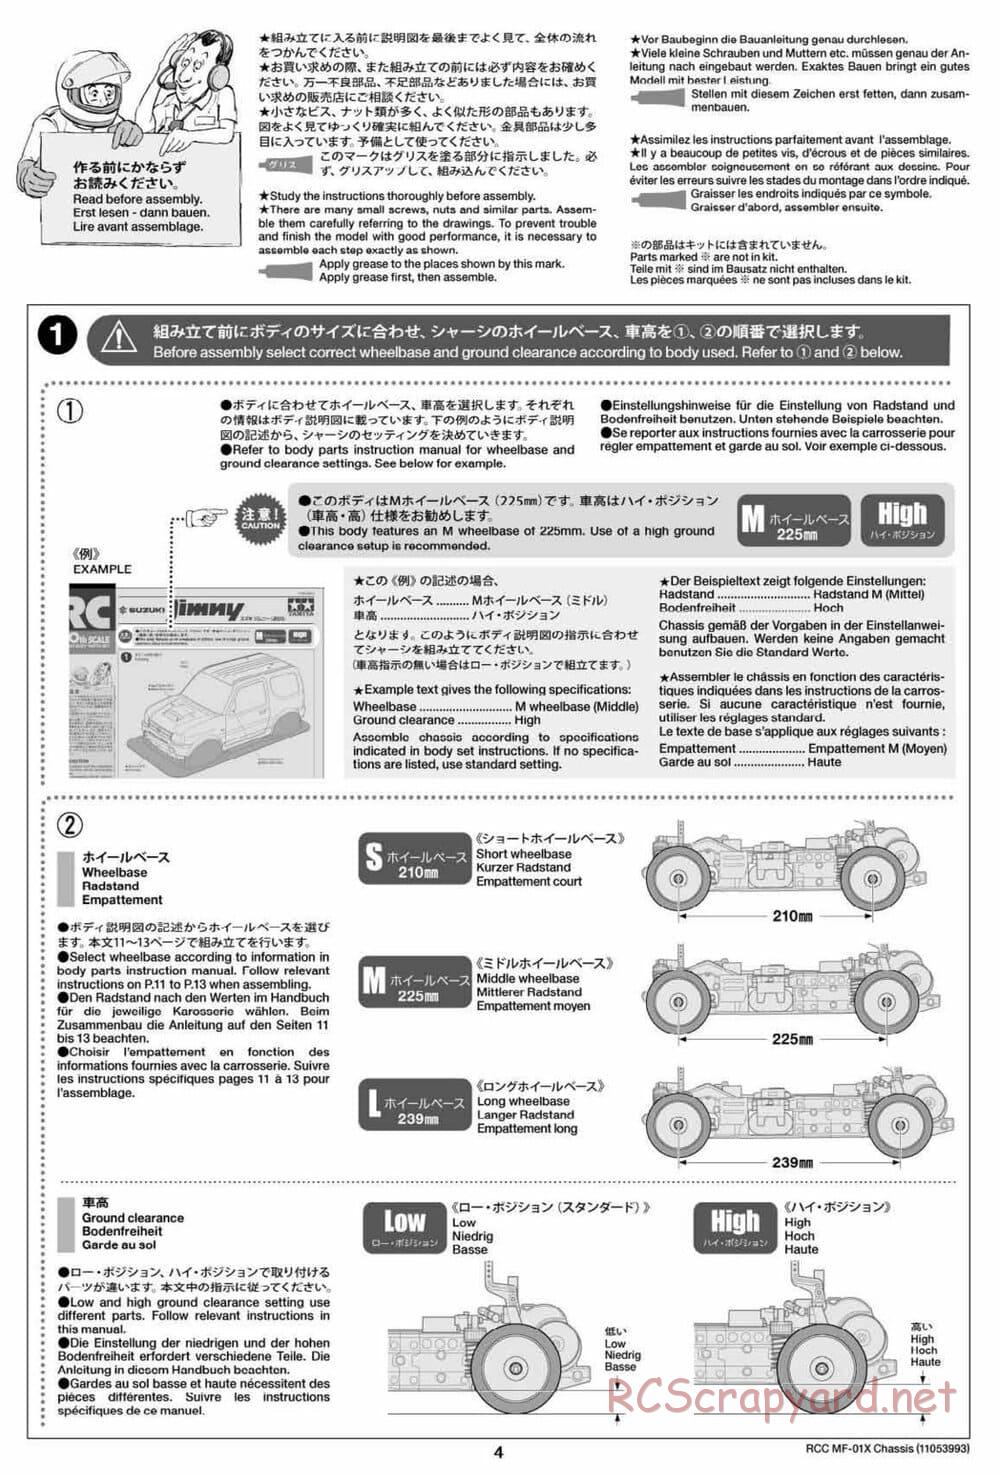 Tamiya - MF-01X Chassis - Manual - Page 4